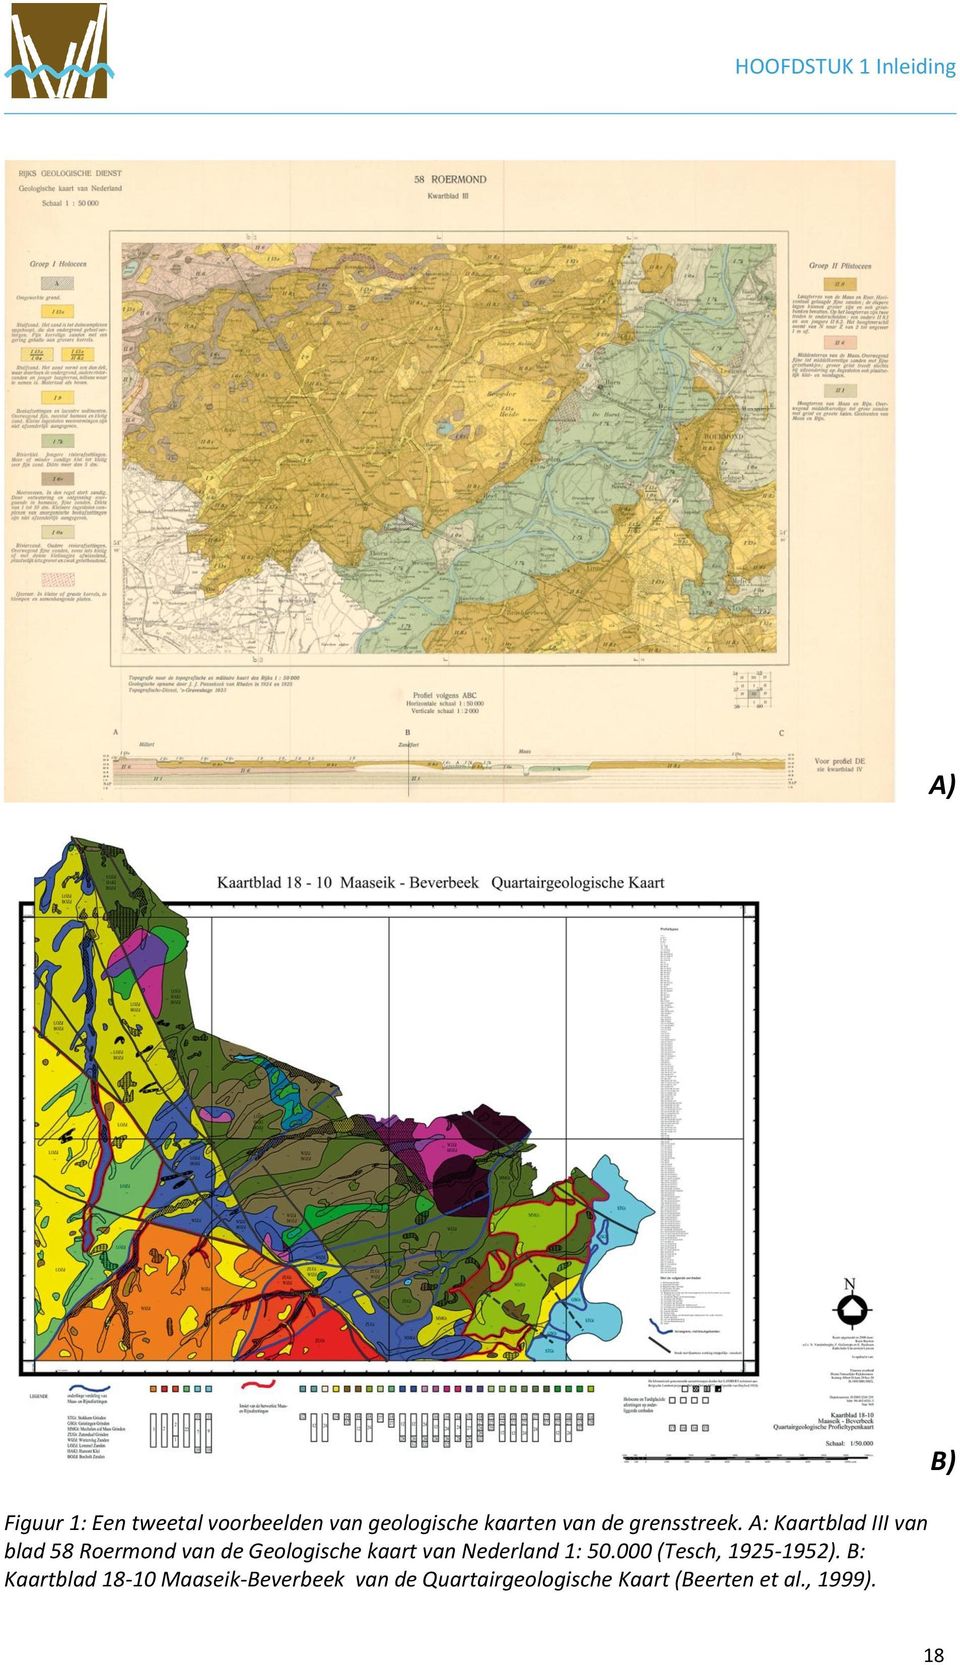 A: Kaartblad III van blad 58 Roermond van de Geologische kaart van Nederland